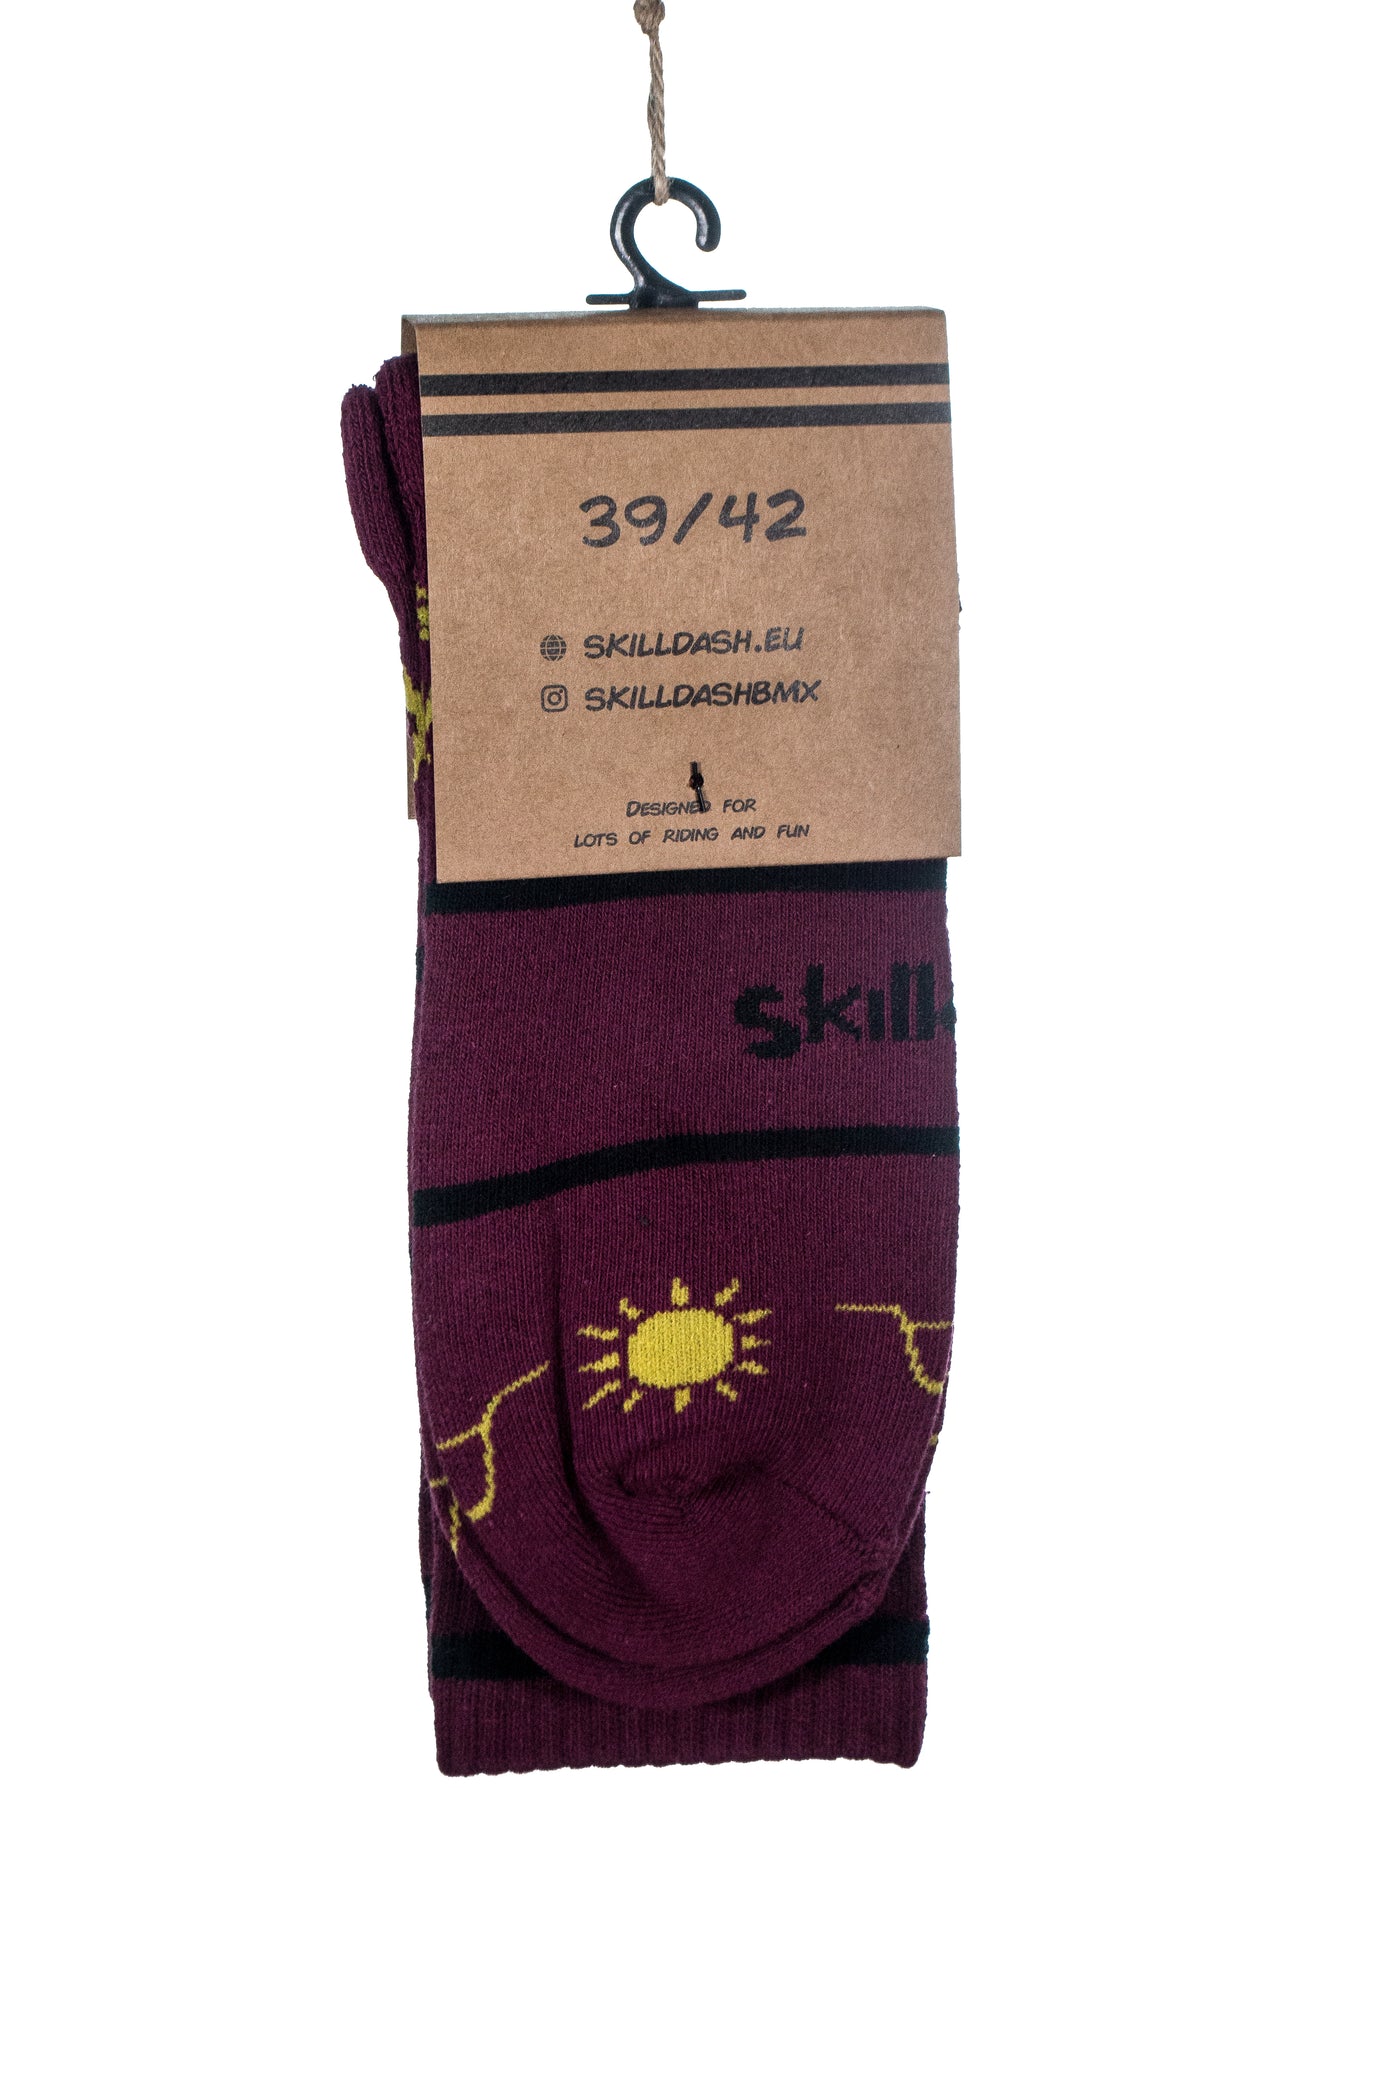 BMX Life Socks - Skilldash